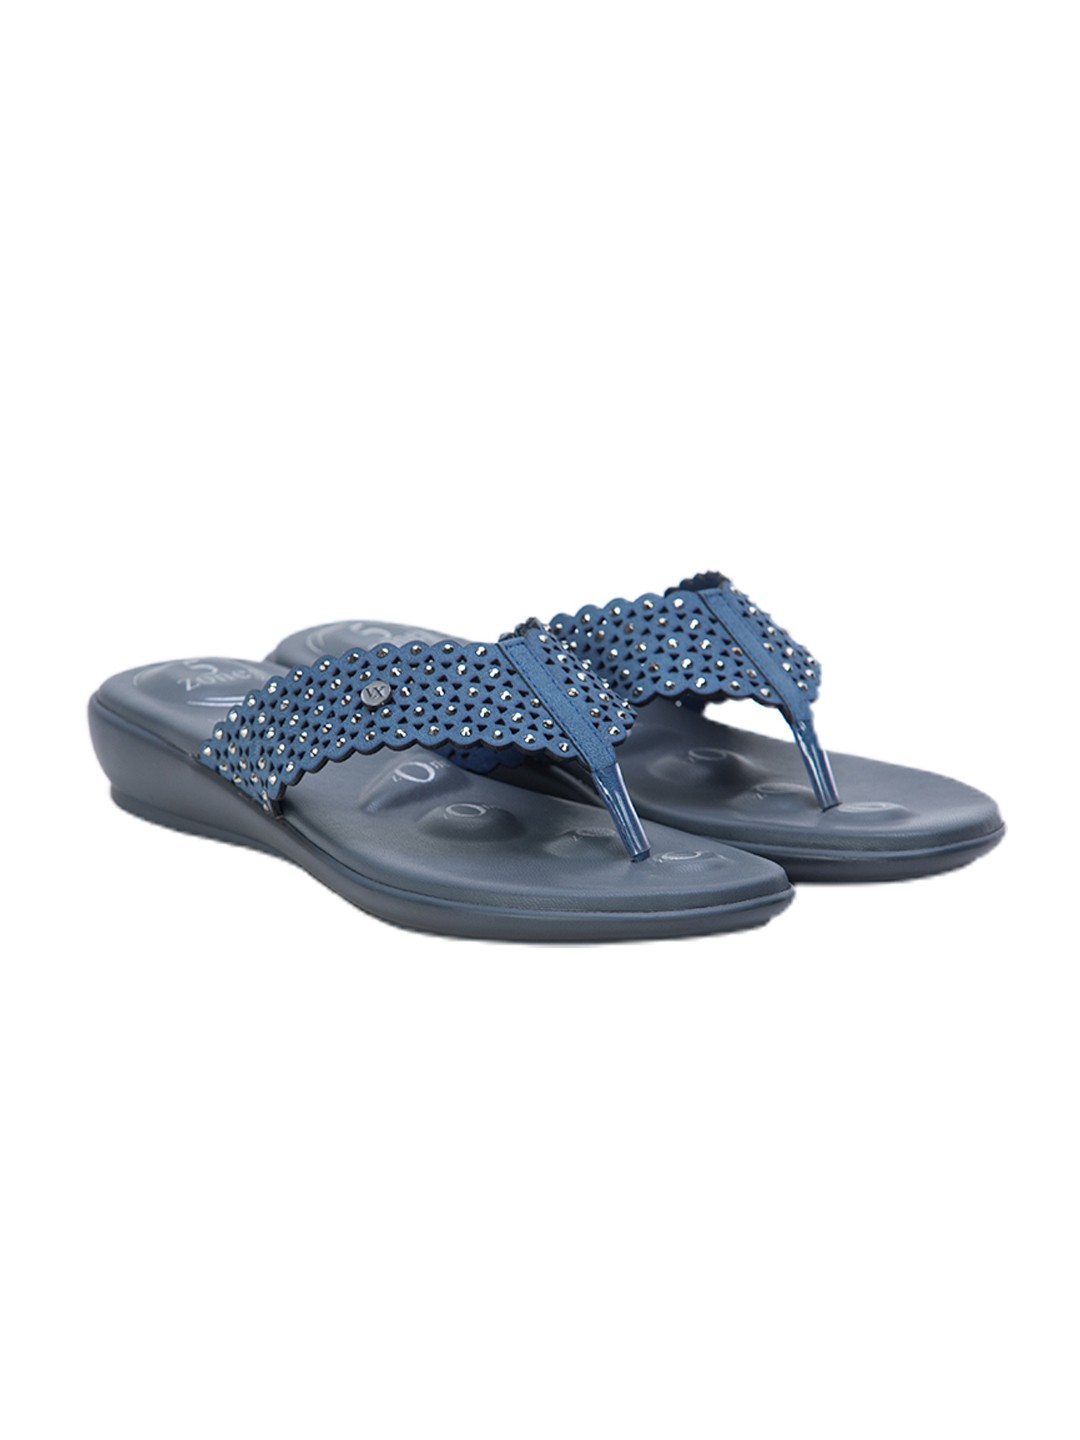 Buy Von Wellx Germany Comfort Gleam Blue Slippers Online in Riyadh